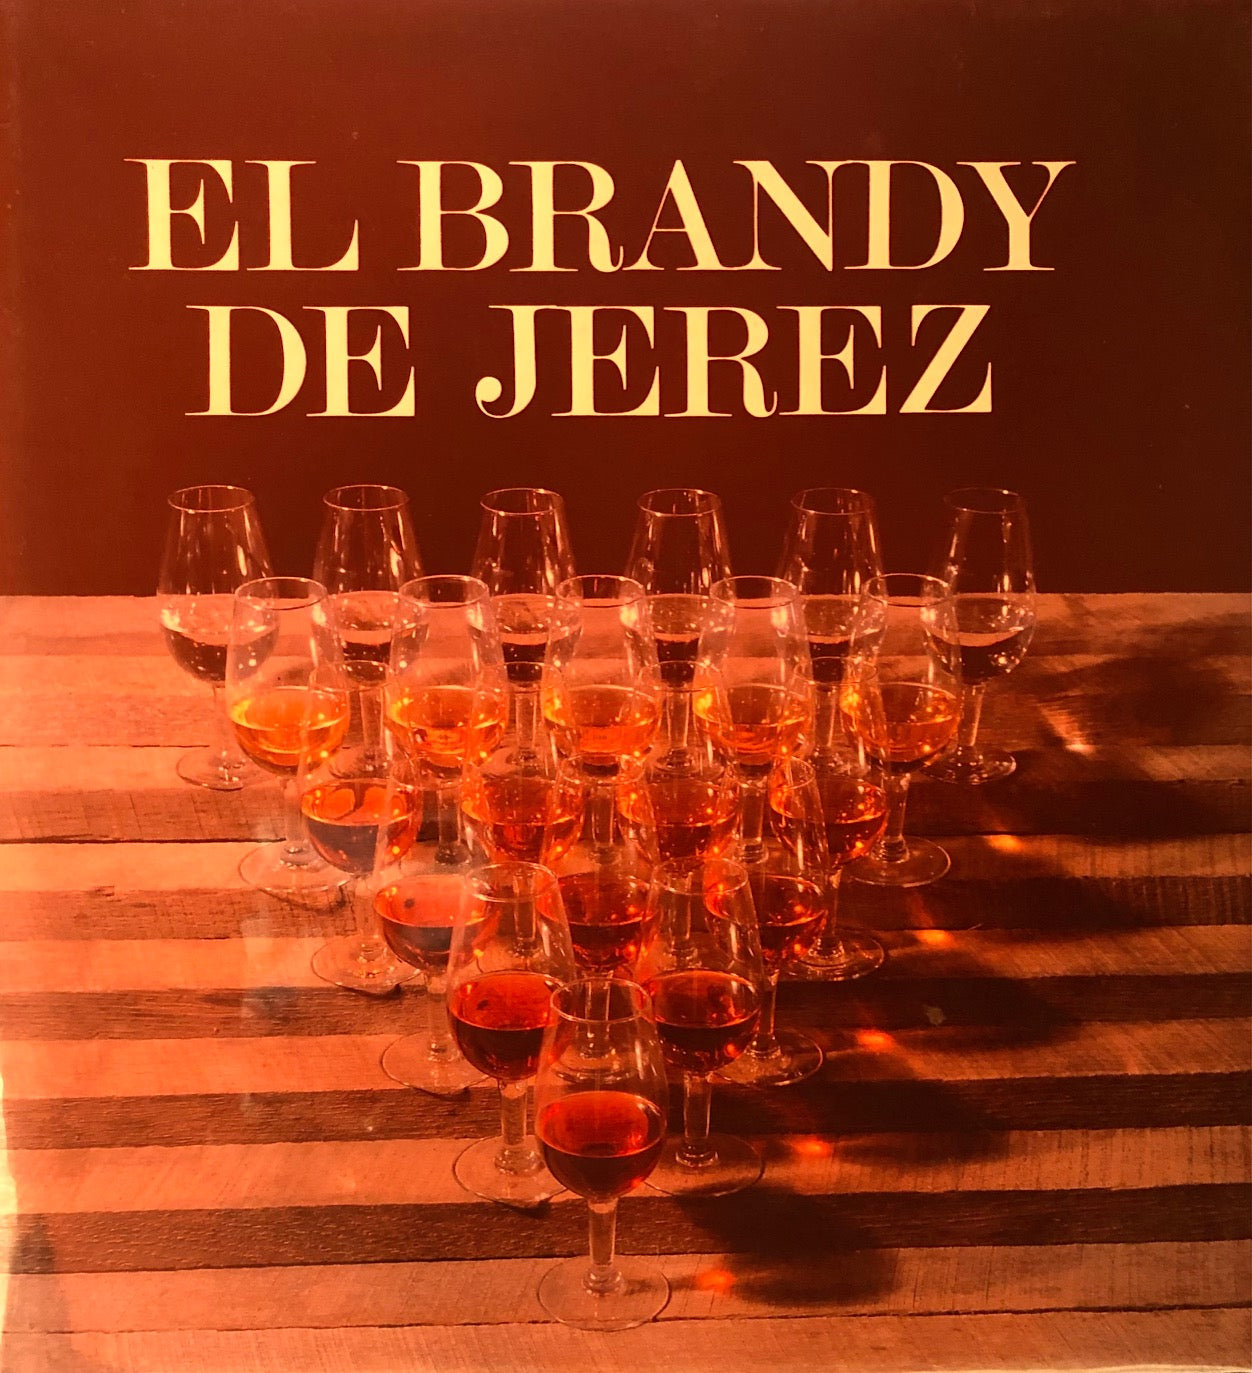 (Brandy) Vicente Fernandez de Bobadilla. El Brandy de Jerez.